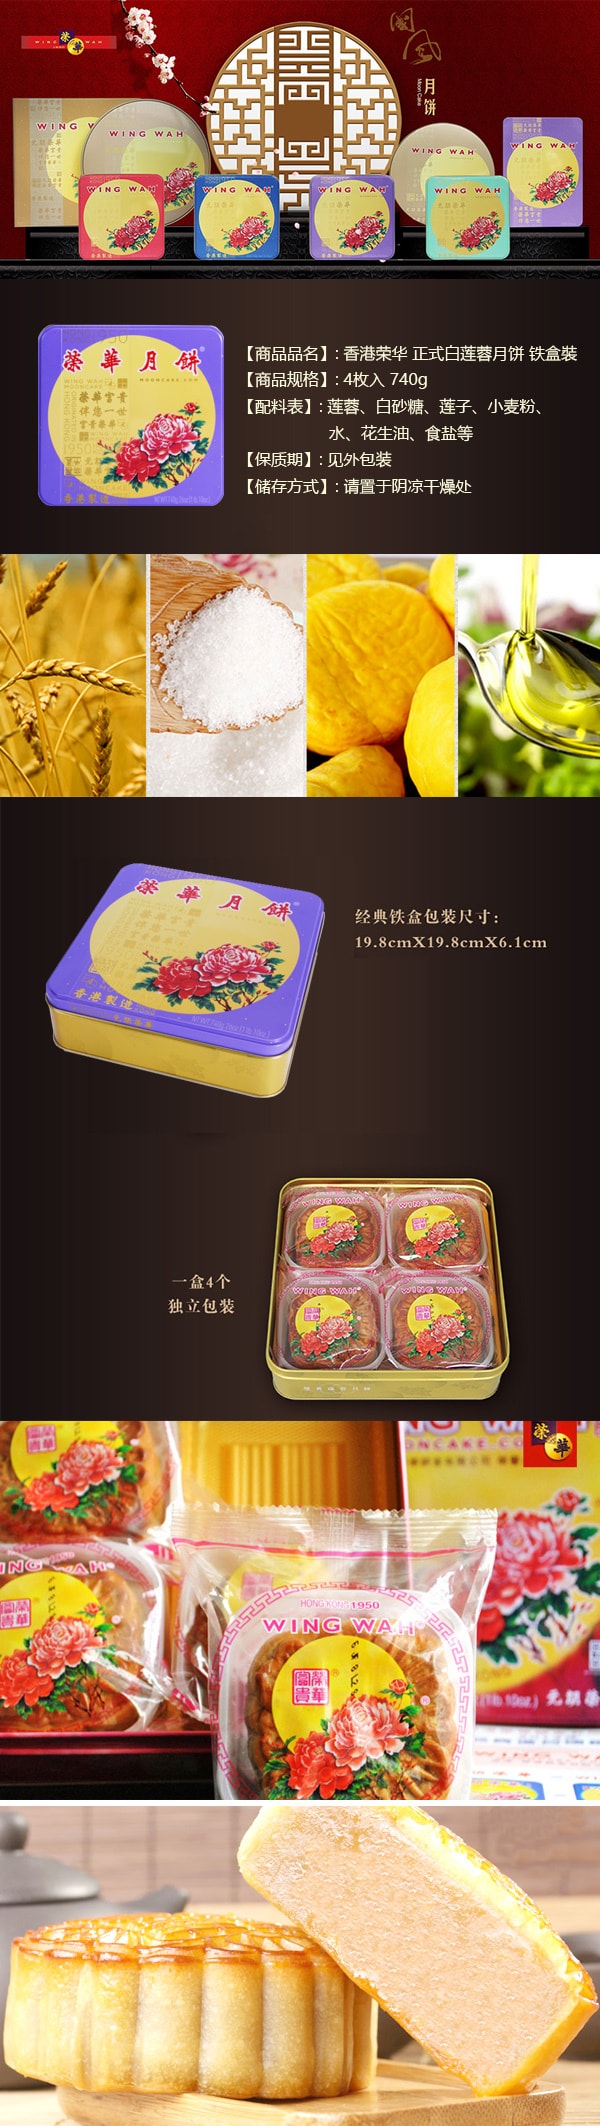 【全美最低价】香港荣华 正式白莲蓉月饼 铁盒装 4枚入 740g 【发货时间：8月底】